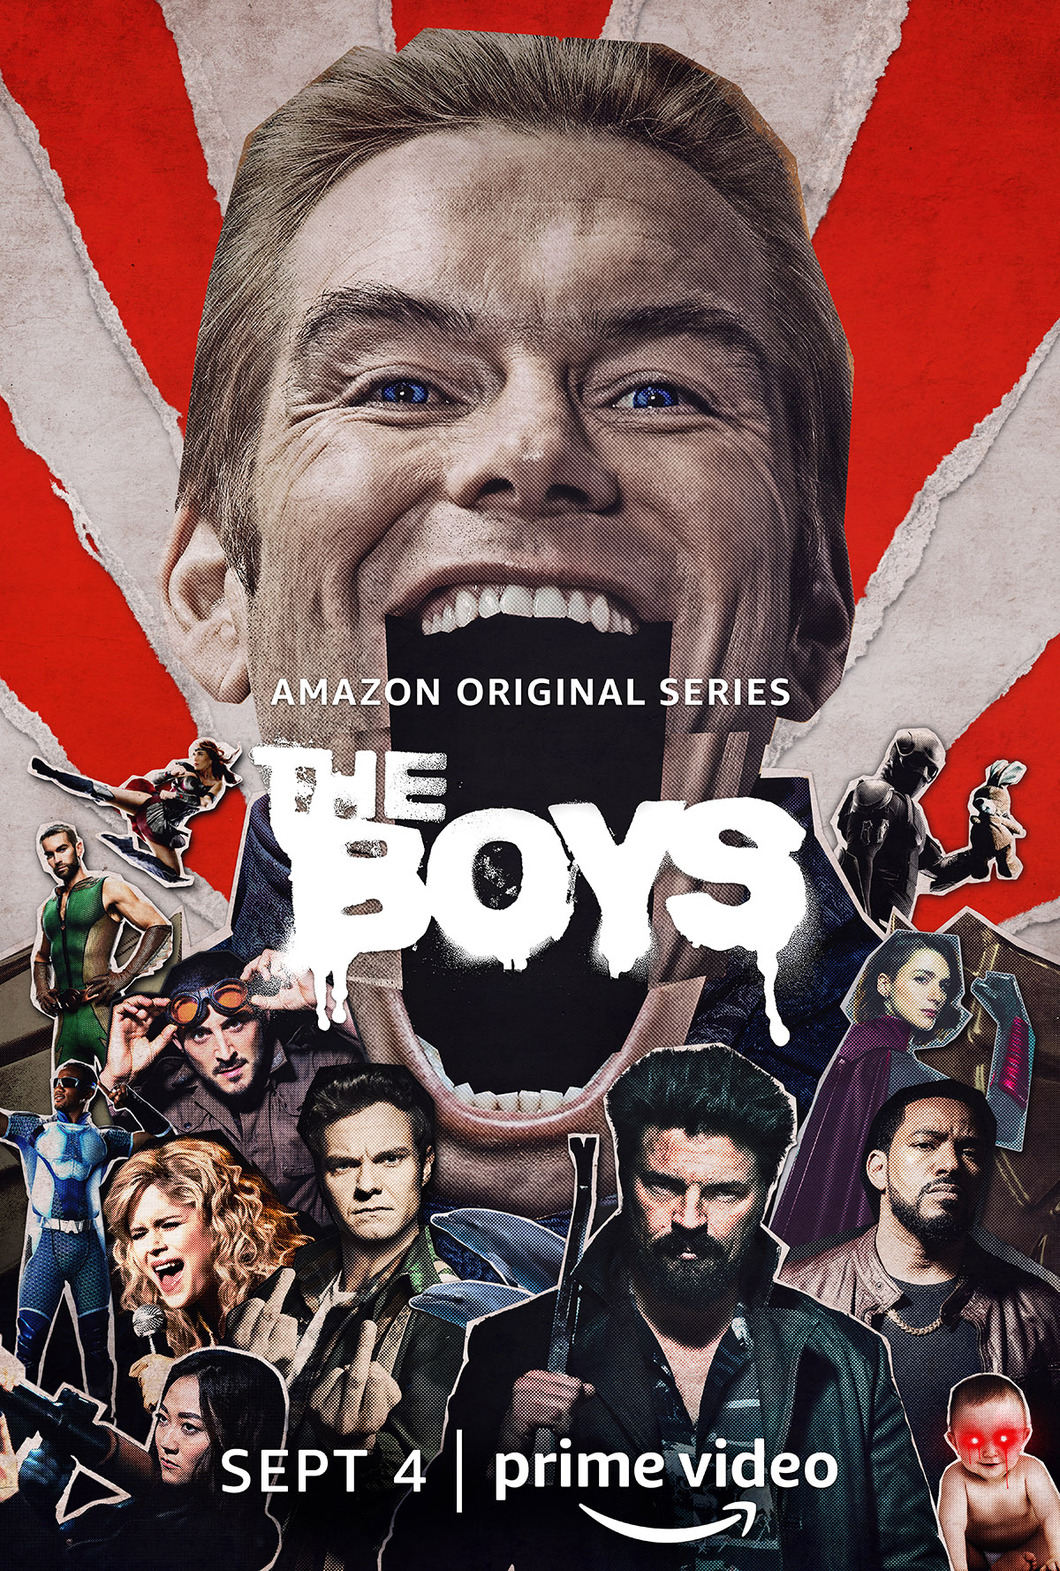 "THE BOYS"